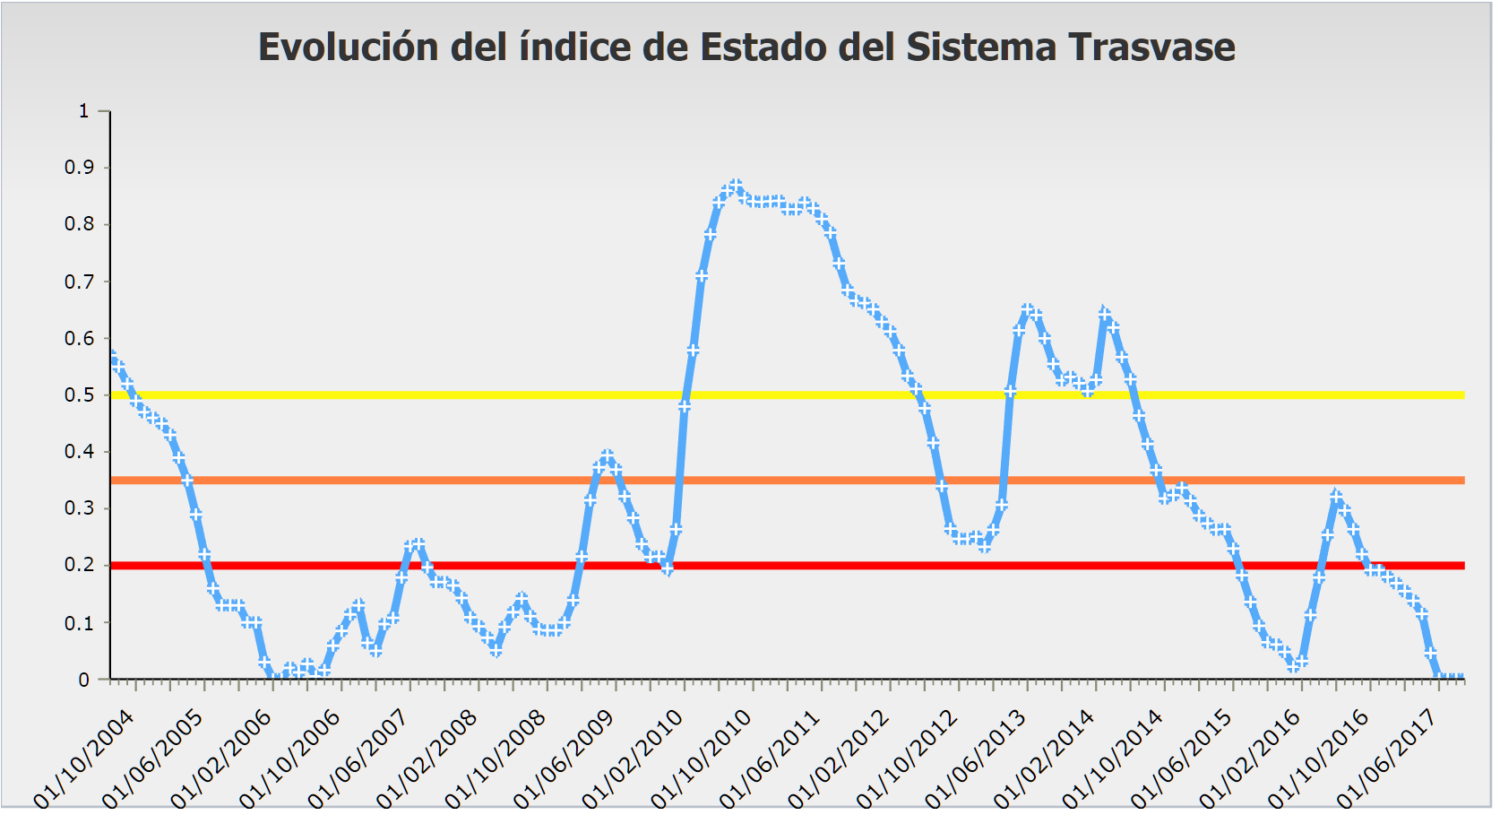 Evolución del indicador del subsistema Trasvase. Fuente: Confederación Hidrográfica del Segura (http://chsegura.es/chs/cuenca/sequias/gestion/)